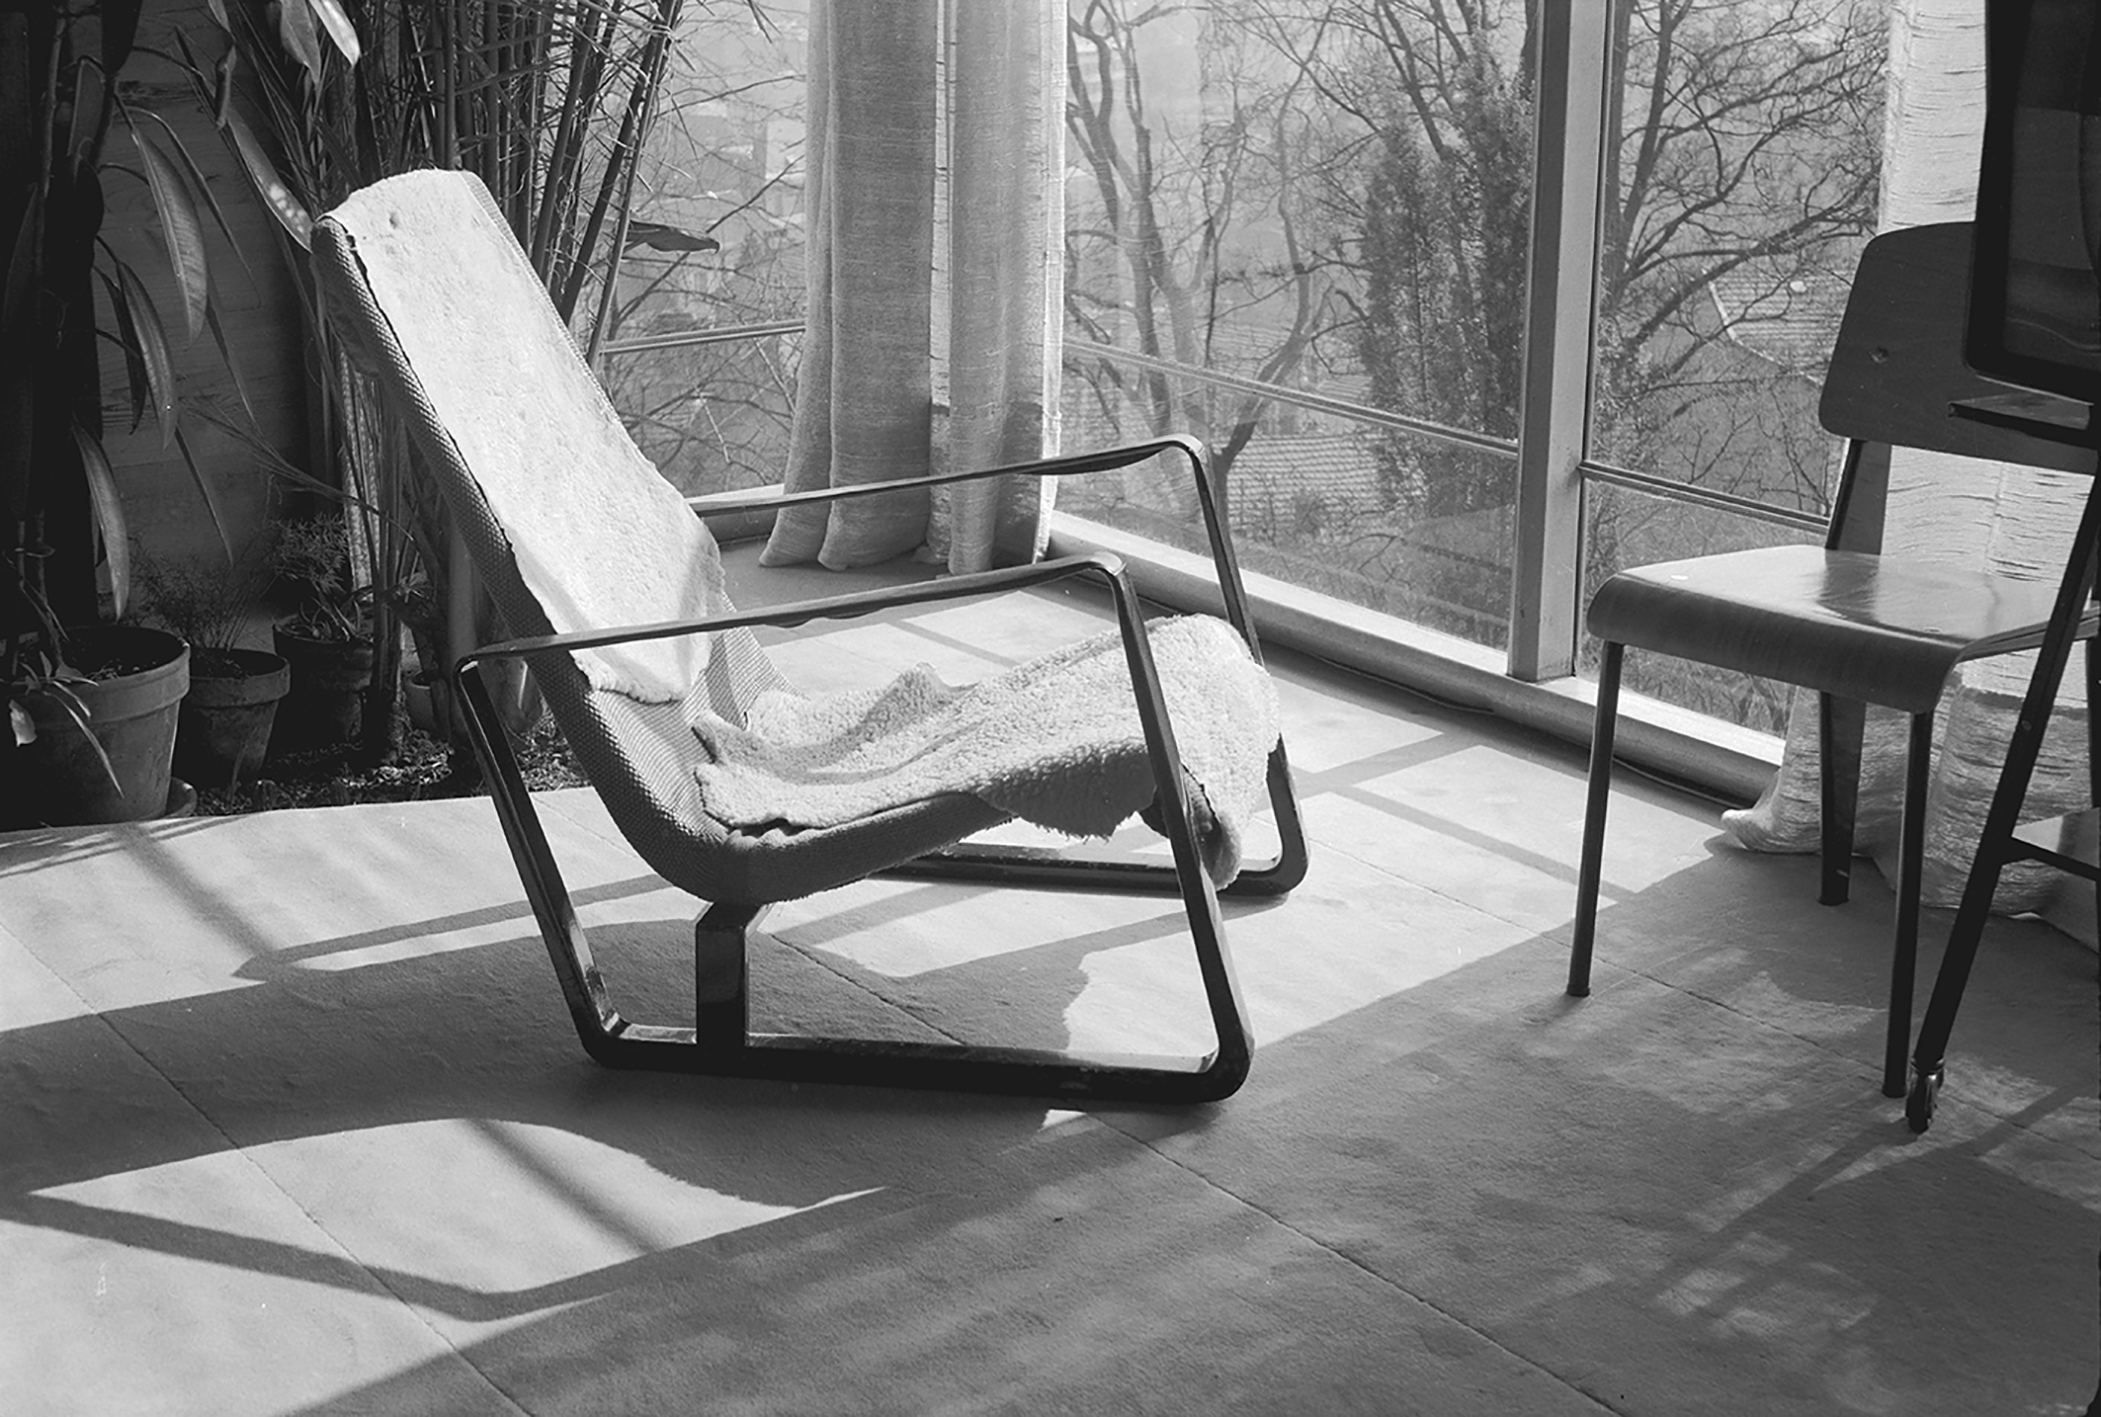 Fauteuil Cité et chaise Métropole n° 305. Maison de Jean Prouvé à Nancy, c. 1954.